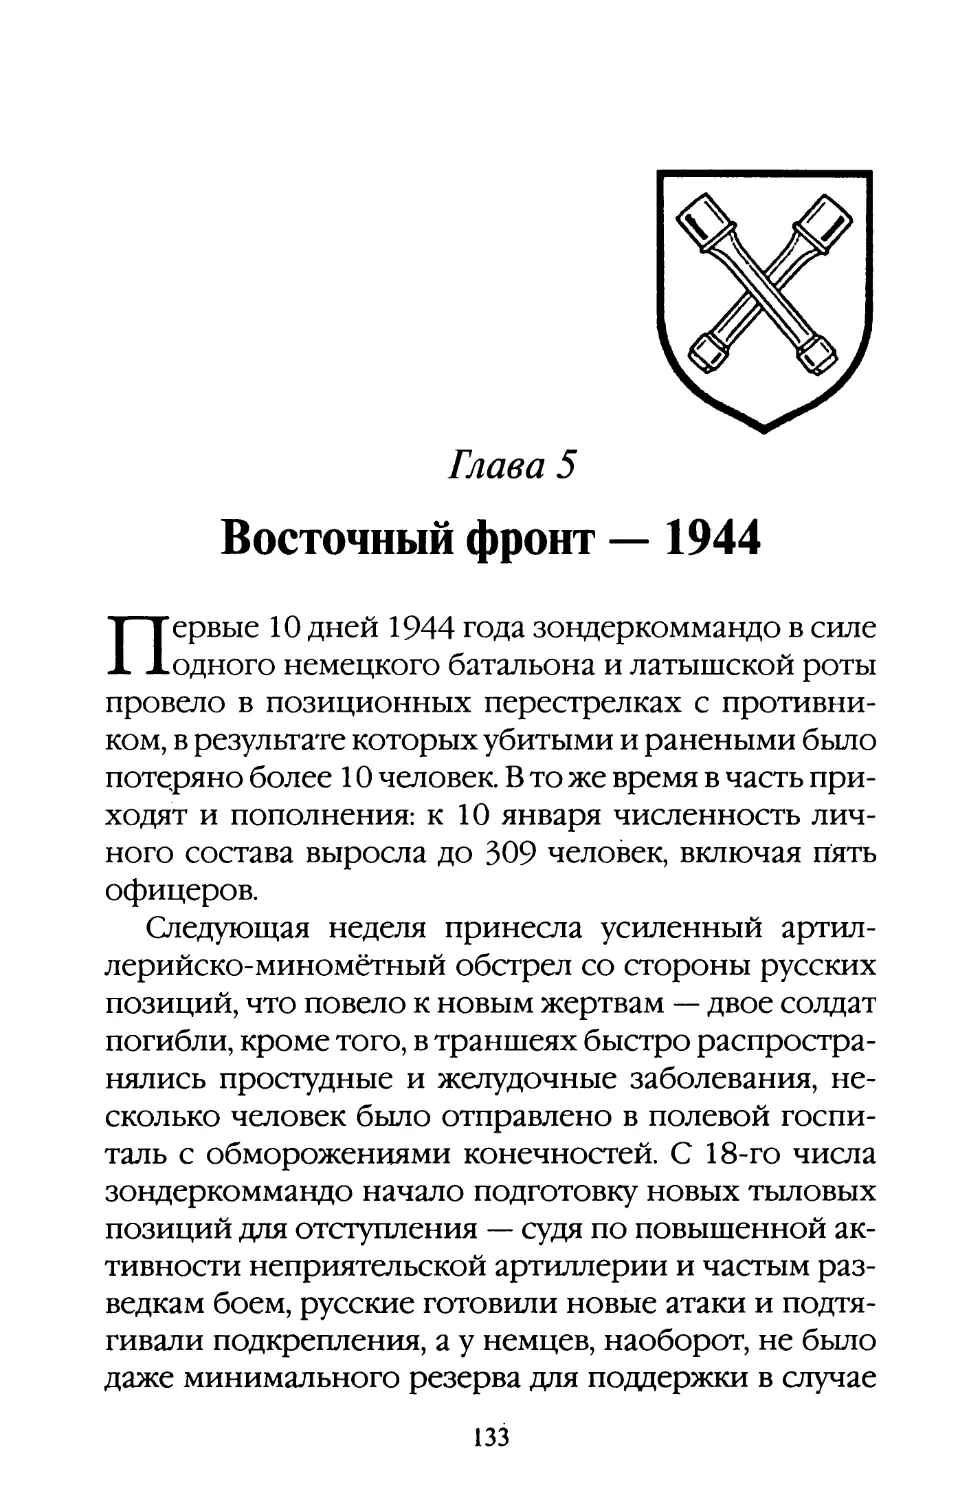 Глава 5. Восточный фронт — 1944